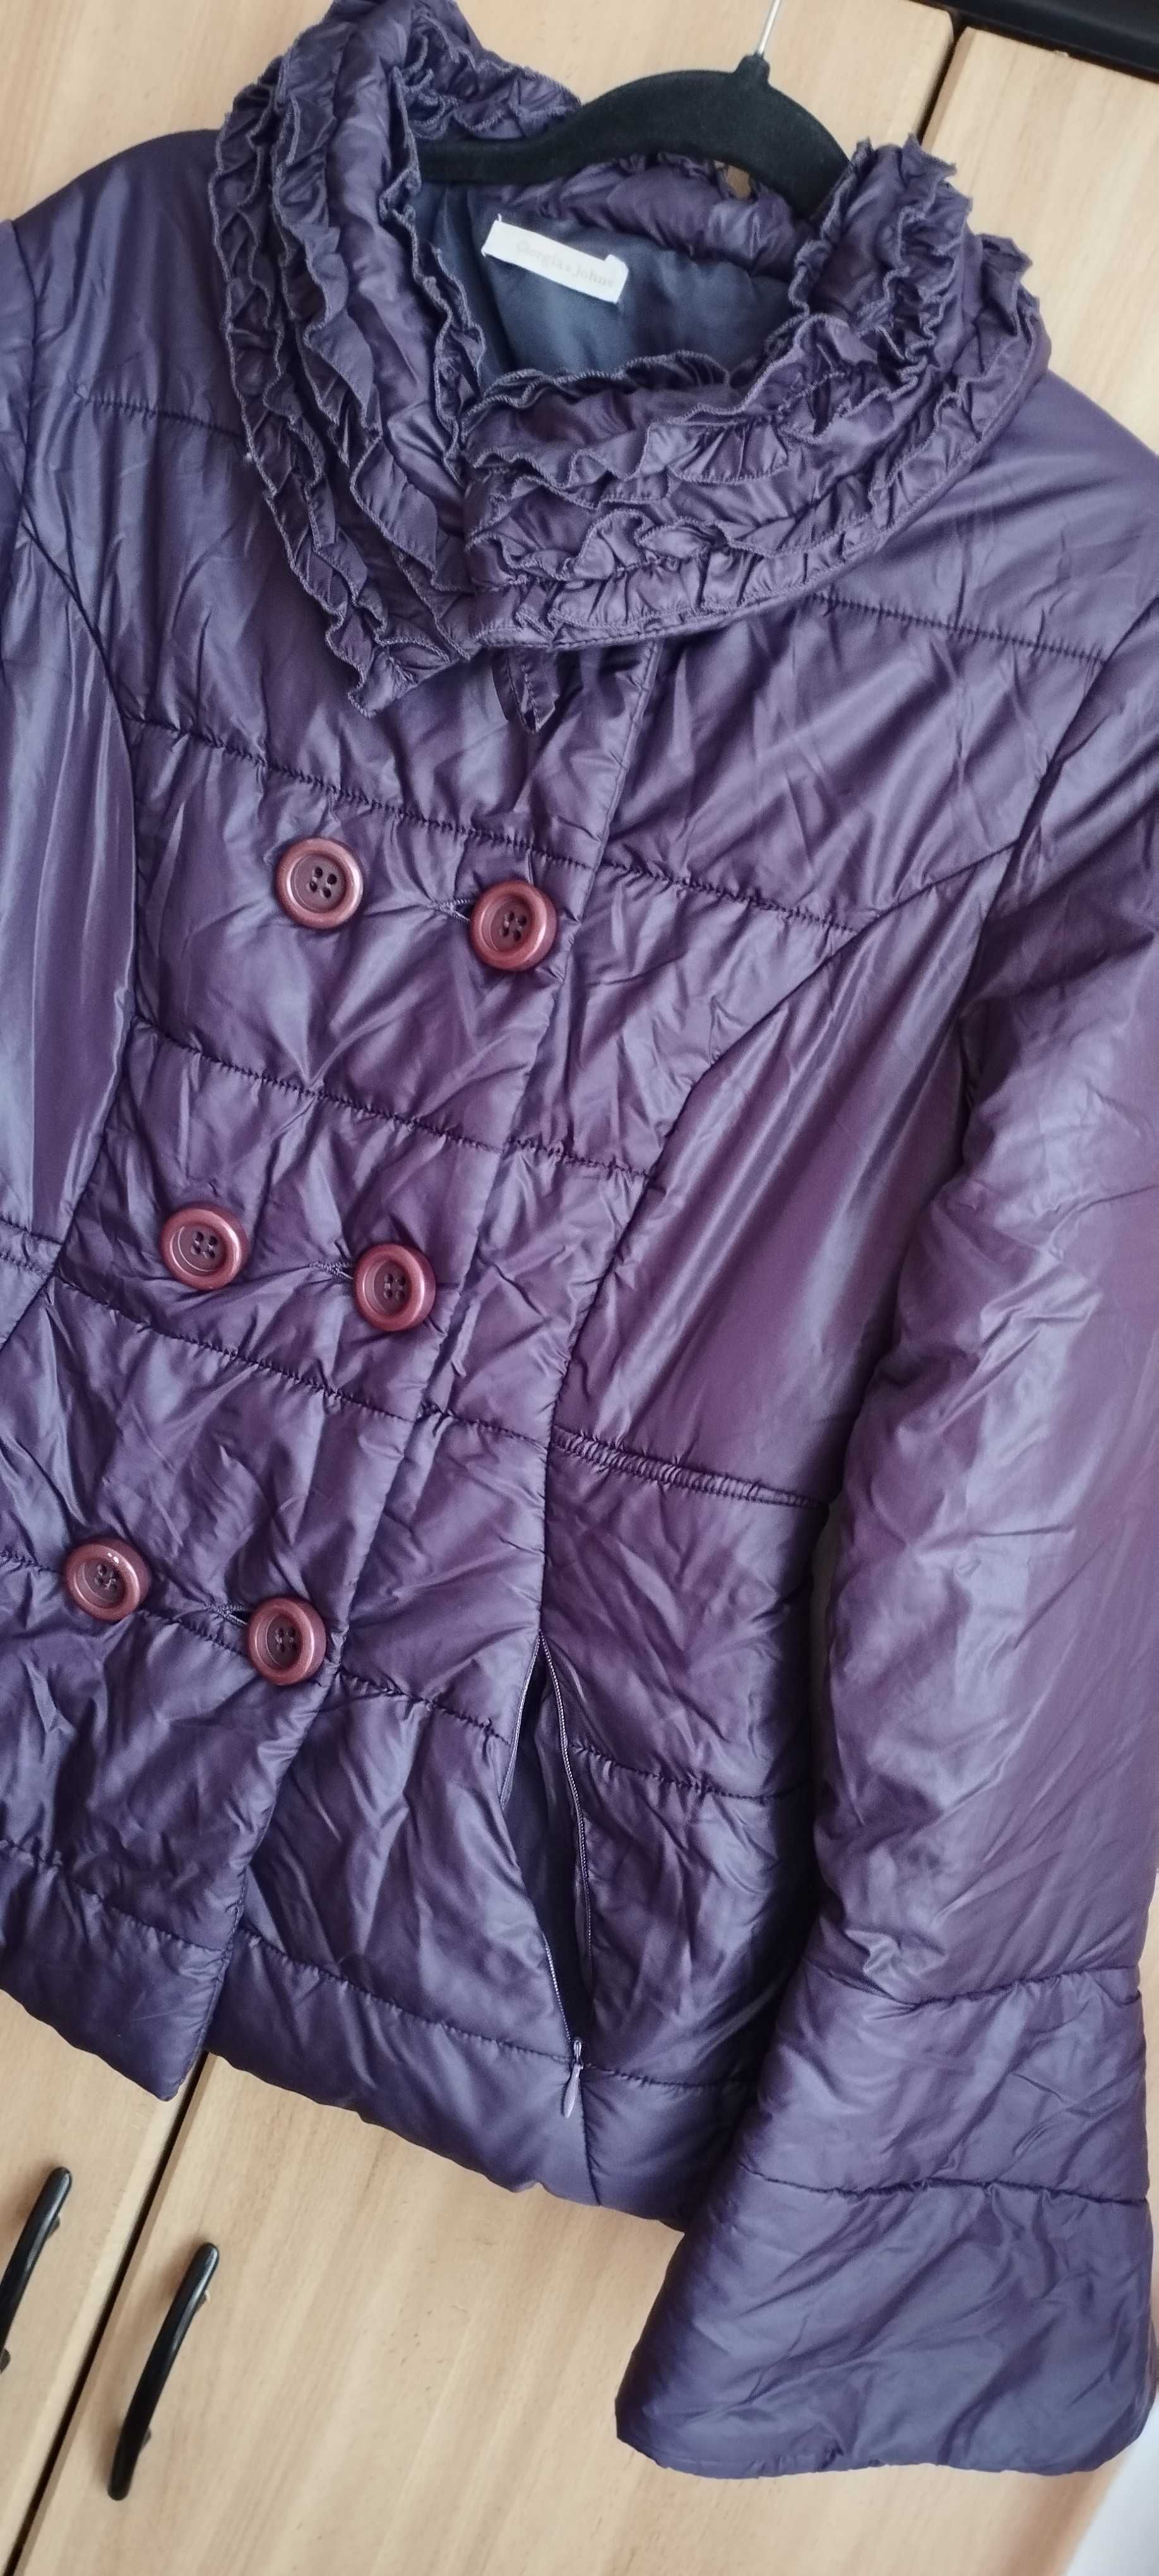 Sprzedam kurtkę zimową fiolet.